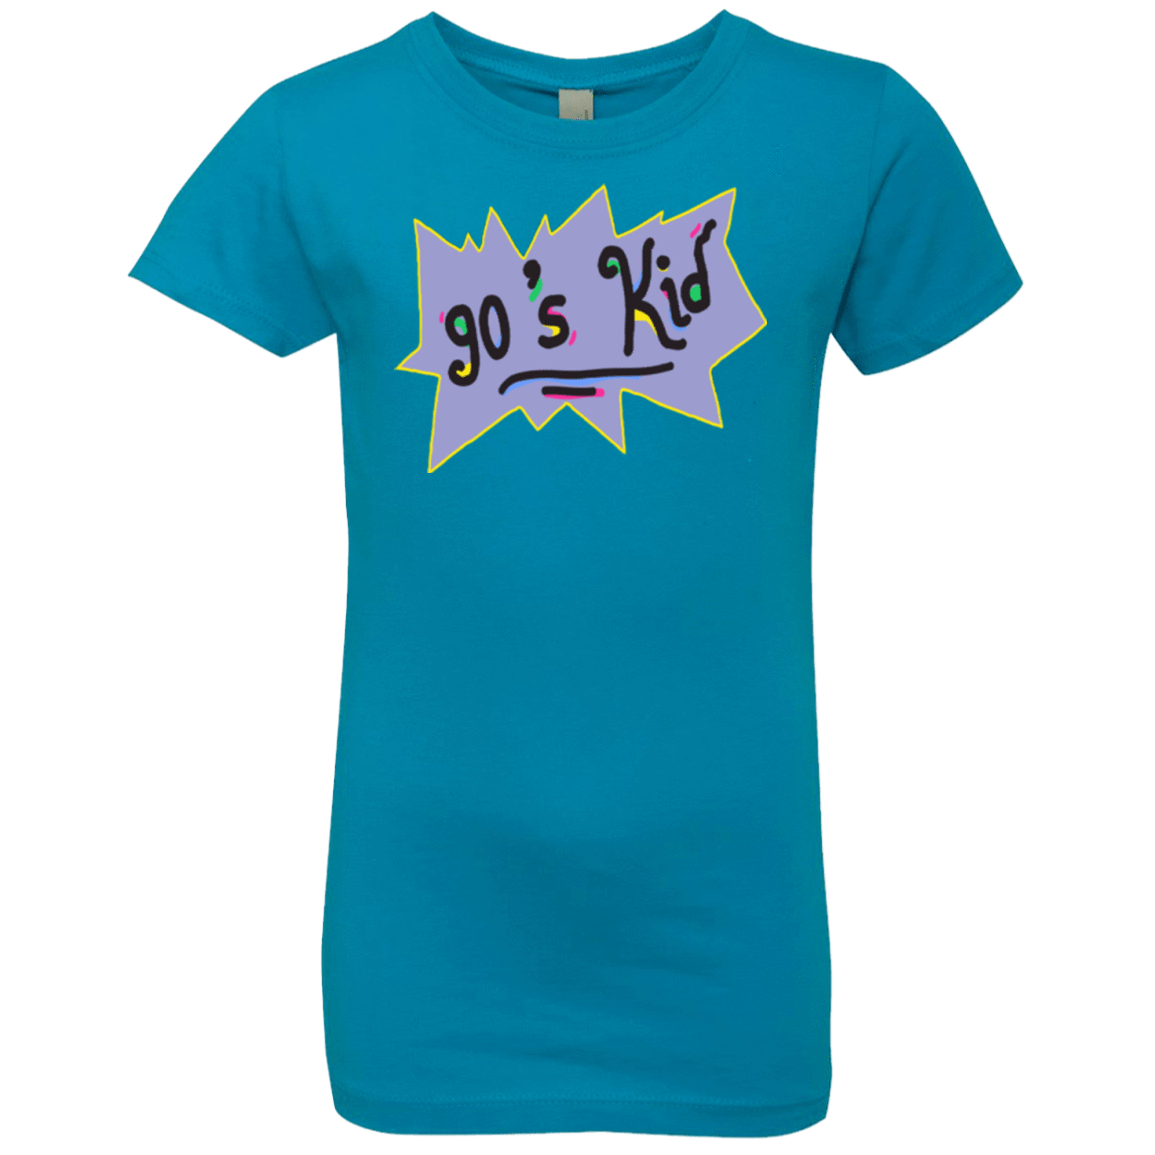 T-Shirts Turquoise / YXS 90's Kid Girls Premium T-Shirt